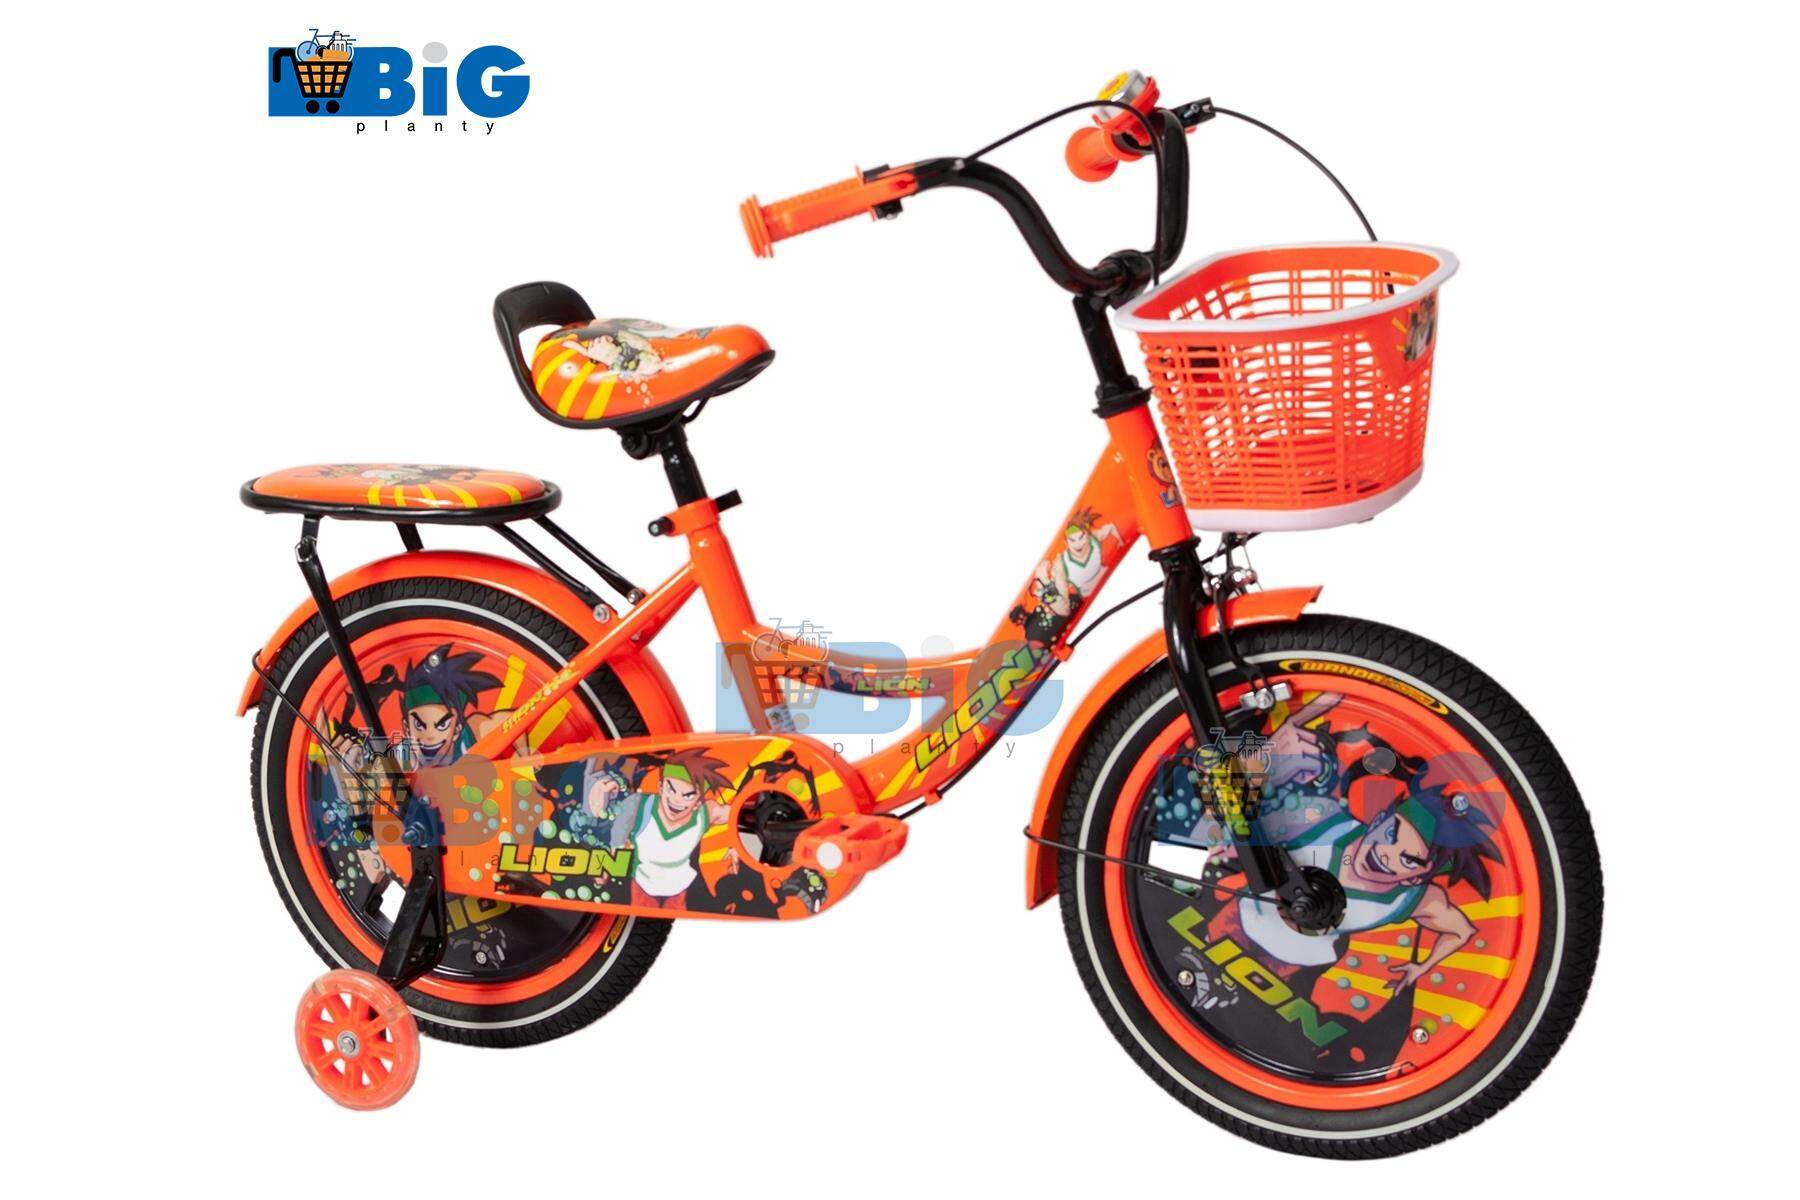 BigPlantyจักรยานเด็กเบนโทน 16 นิ้ว สีส้ม No.7777